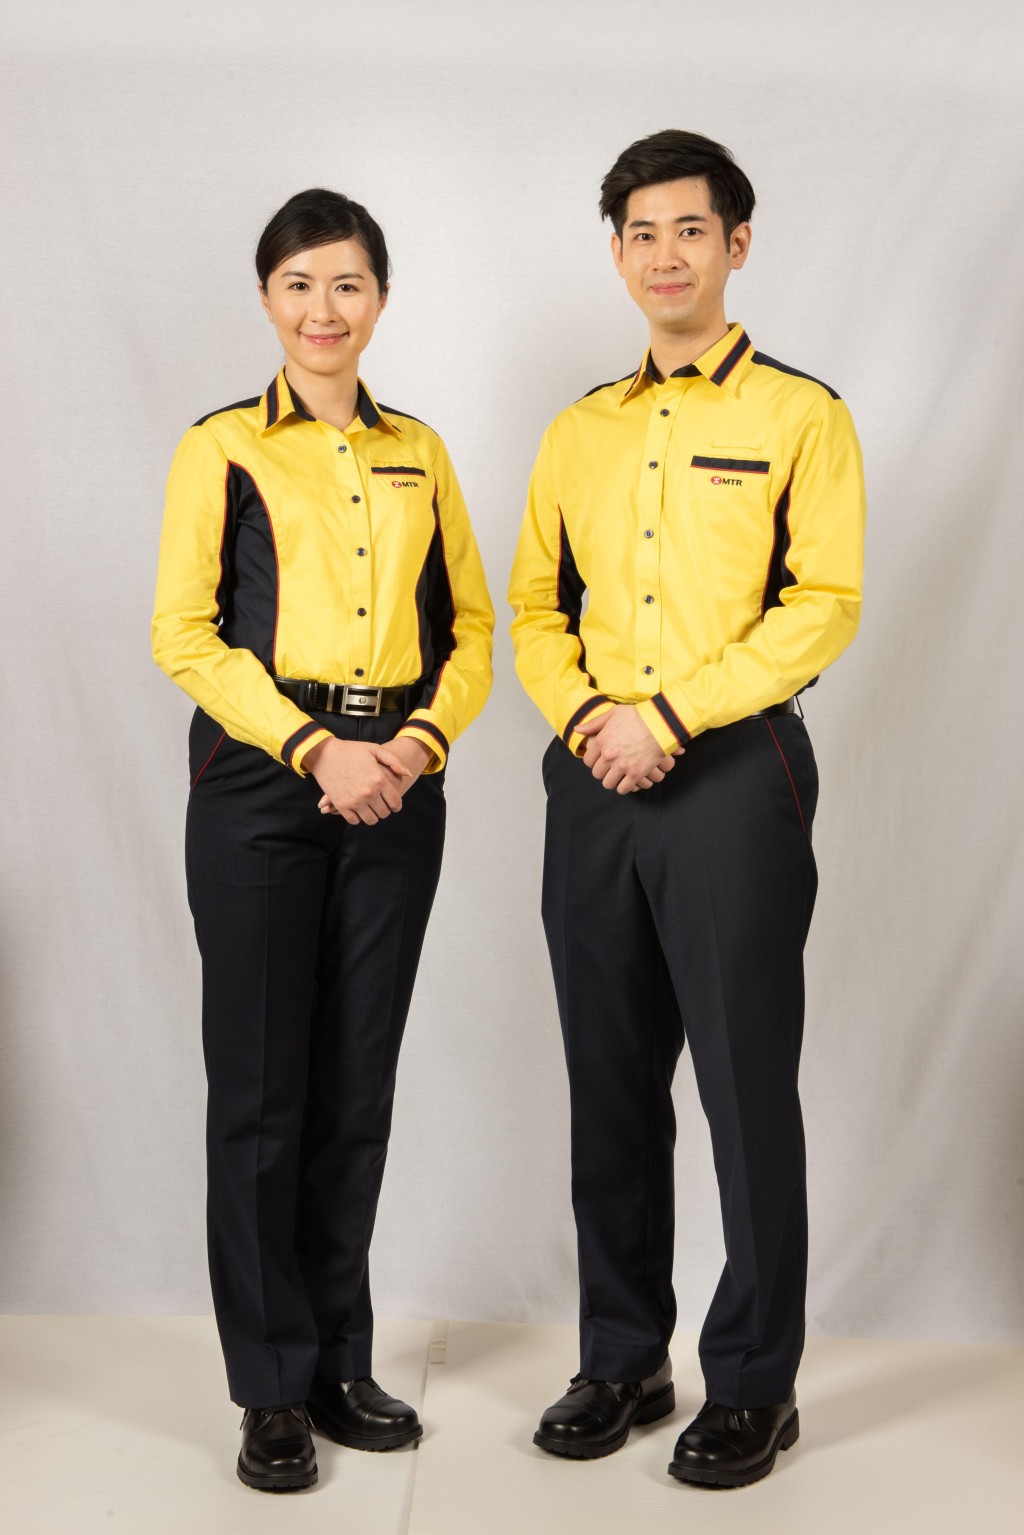 現今制服繼續以黃藍色調為設計基礎，讓乘客易於辨認；造型更加時尚，恤衫領位、袖口及腰身加上紅、藍色線條。港鐵提供